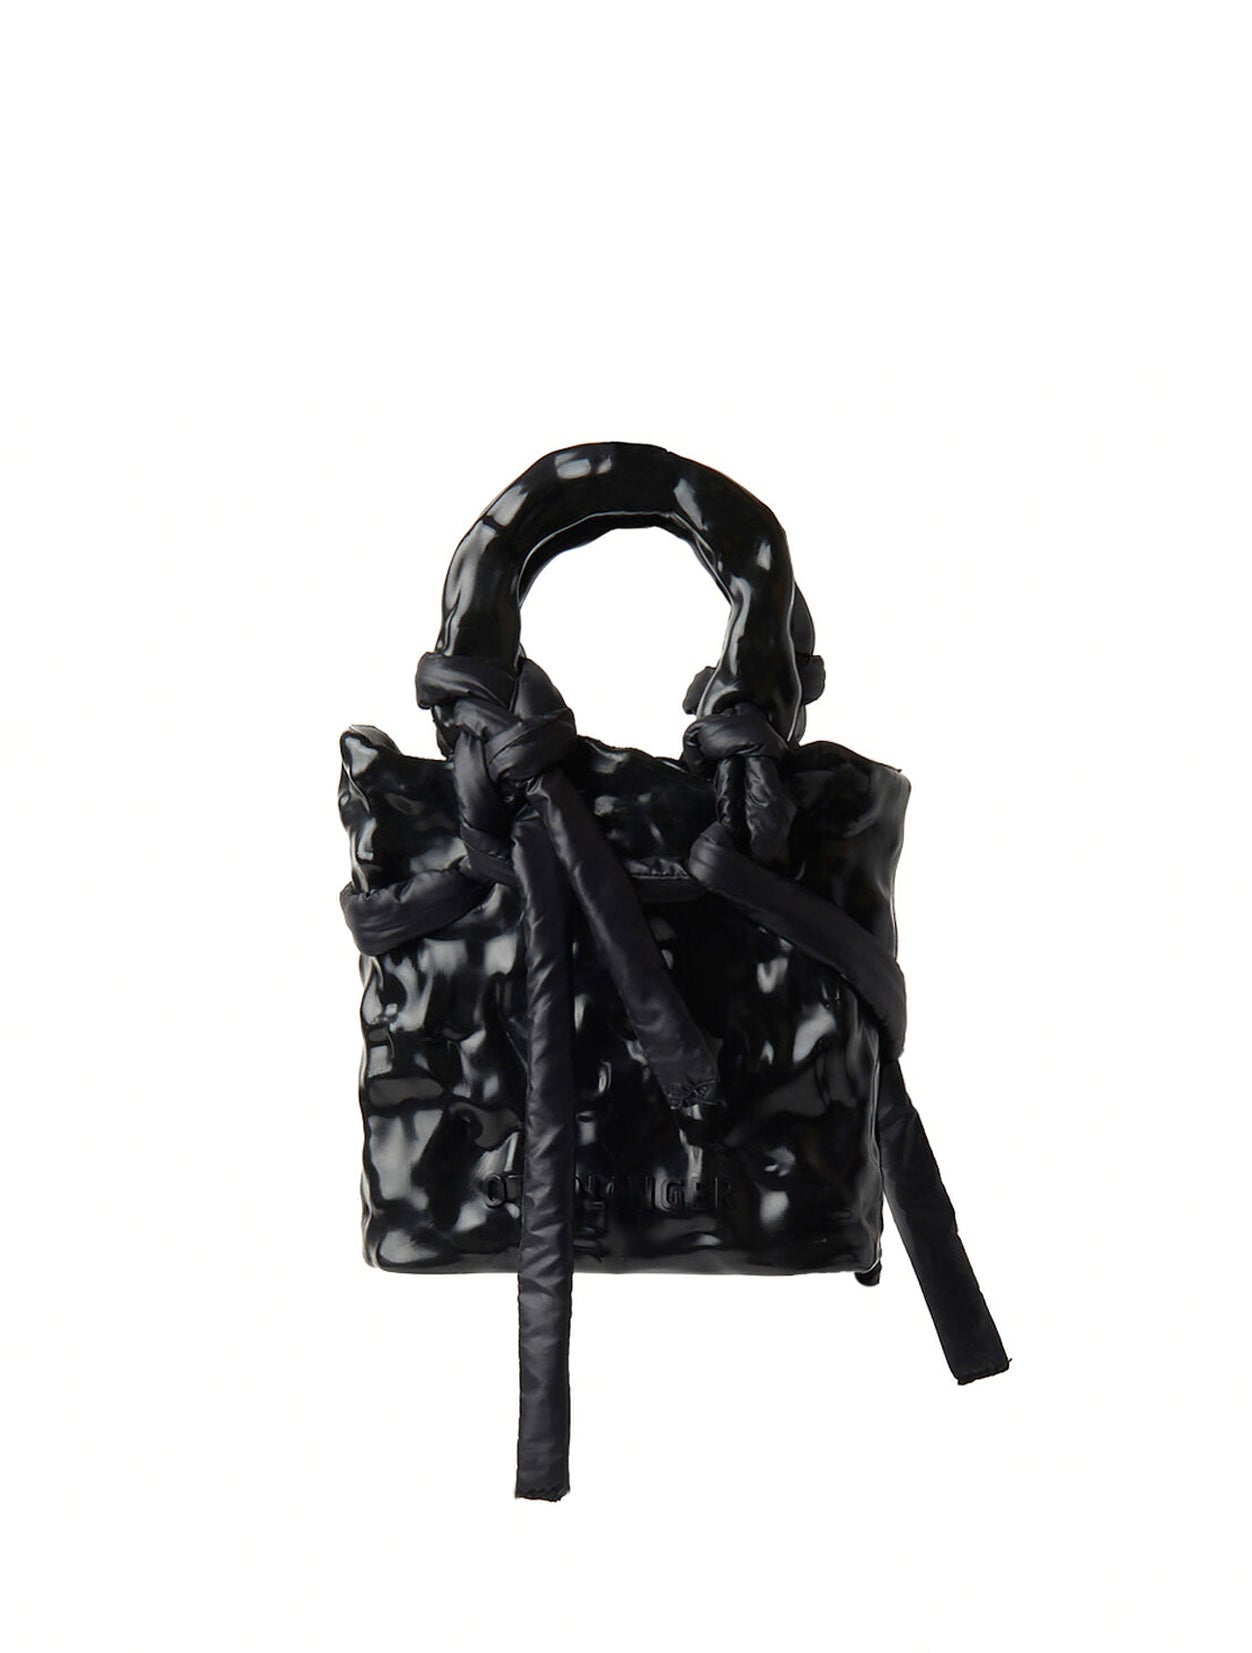 OTTOLINGER Signature Ceramic Handbag in Black